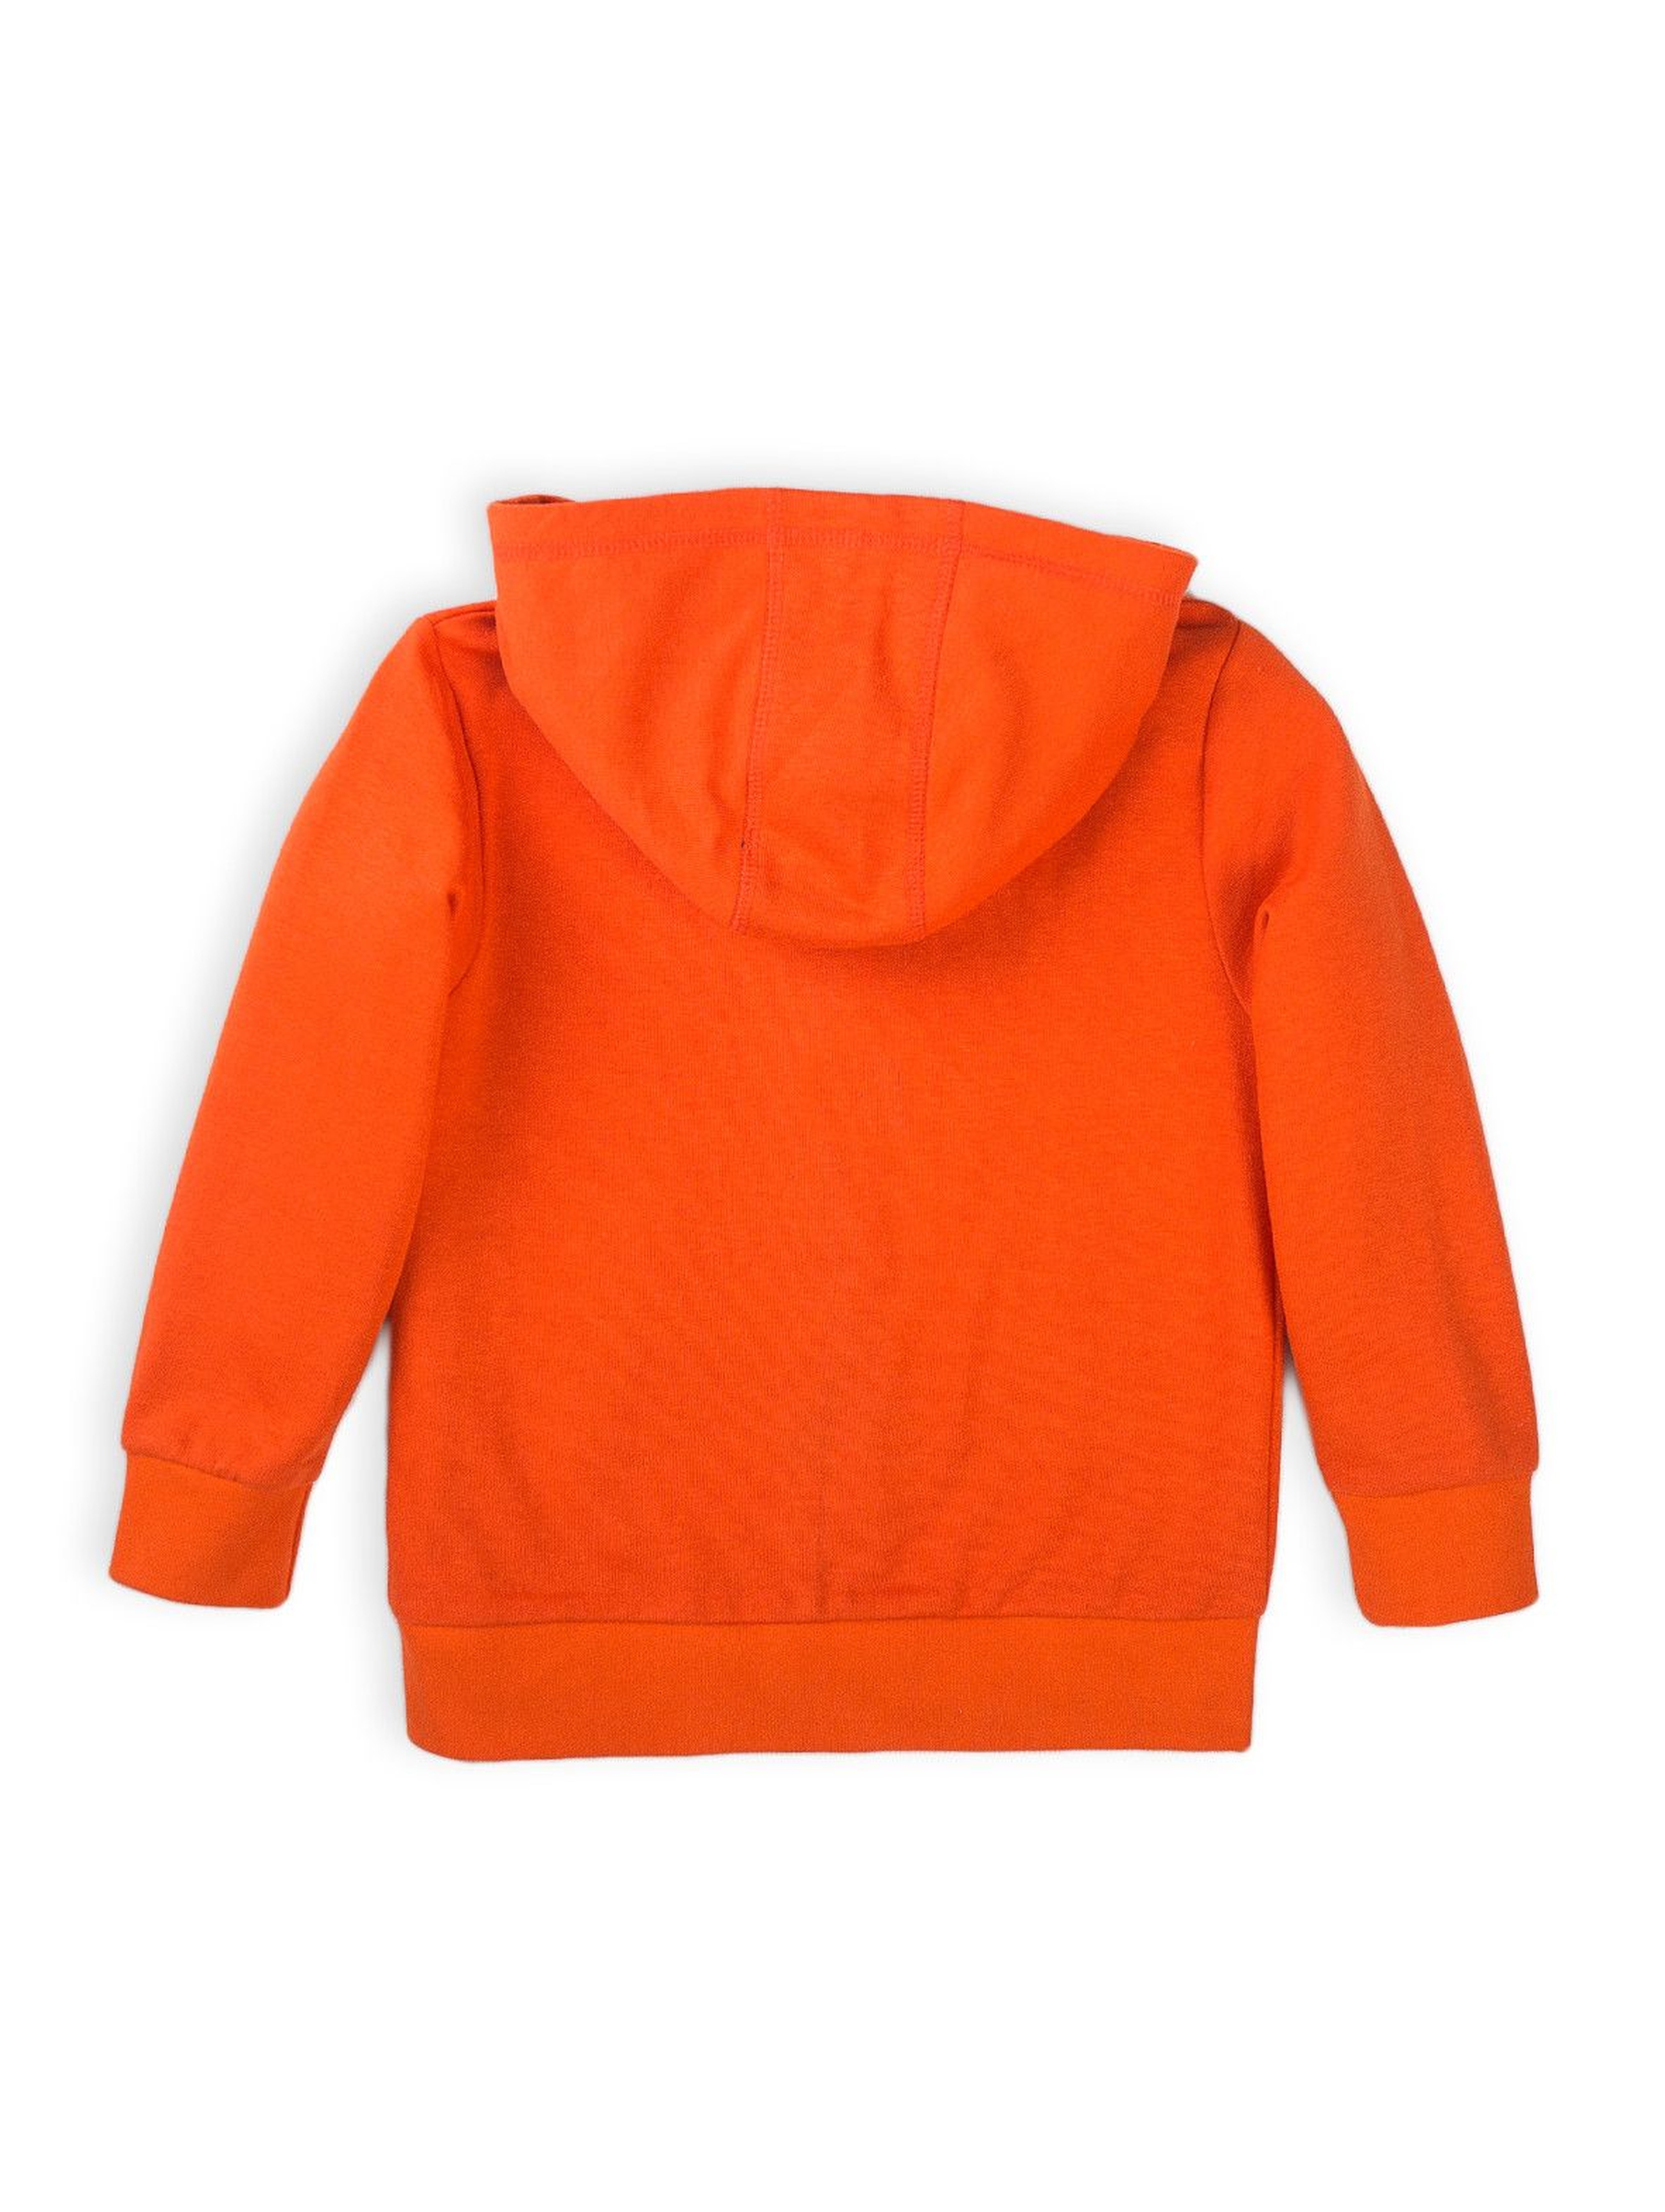 Bluza dresowa niemowlęca z kapturem pomarańczowa